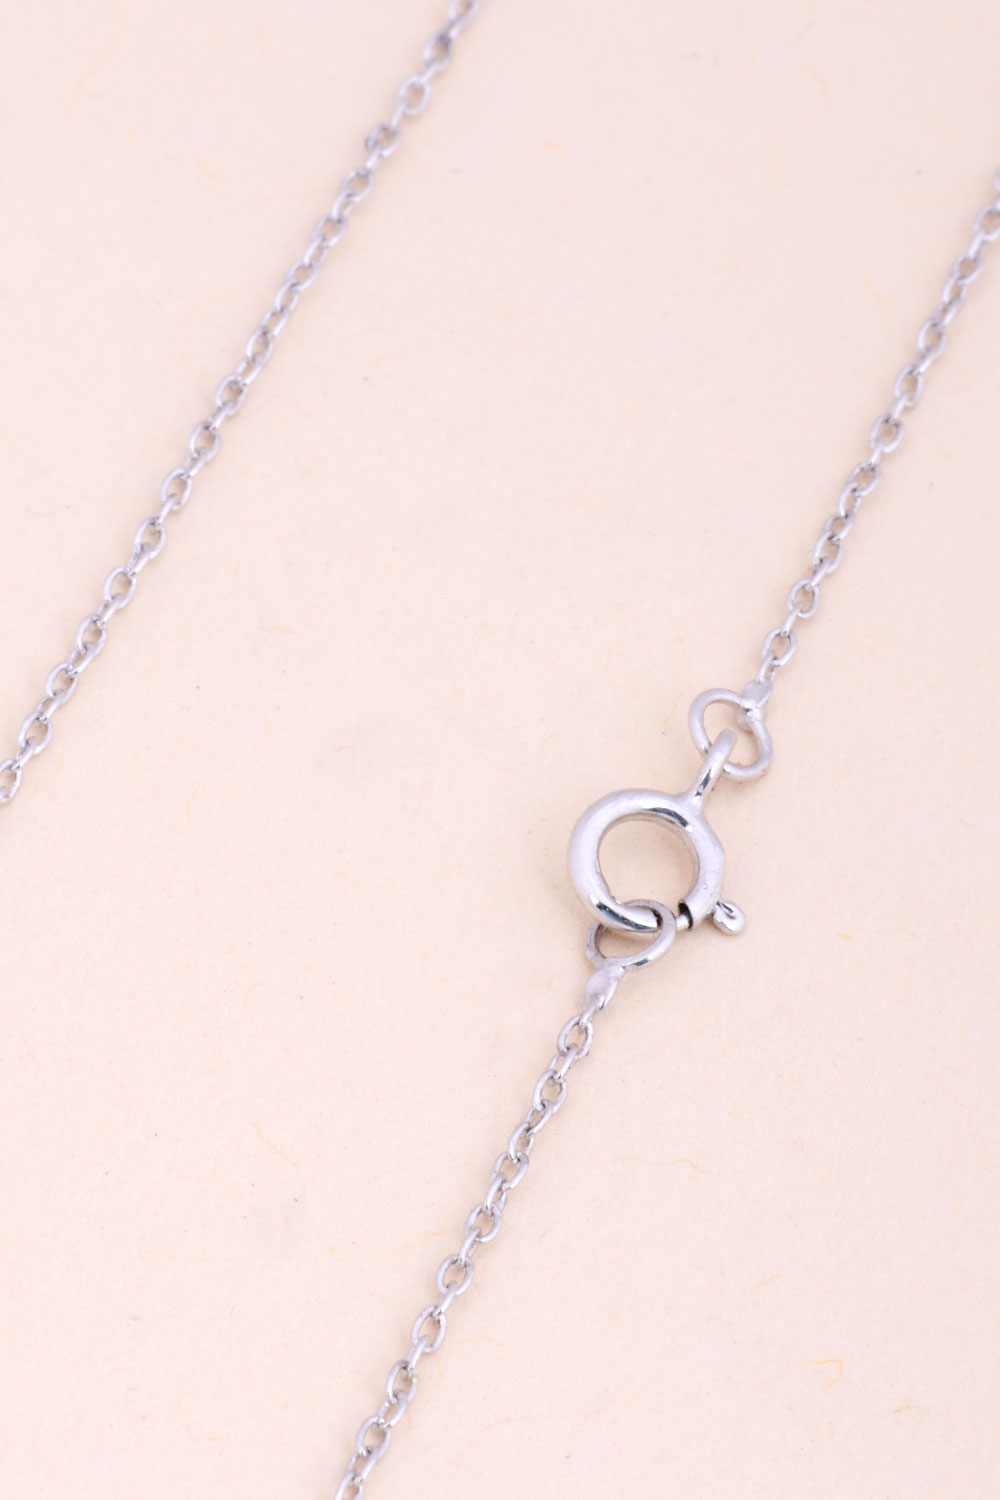 Tanzanite Silver Necklace Pendant Chain 10067158